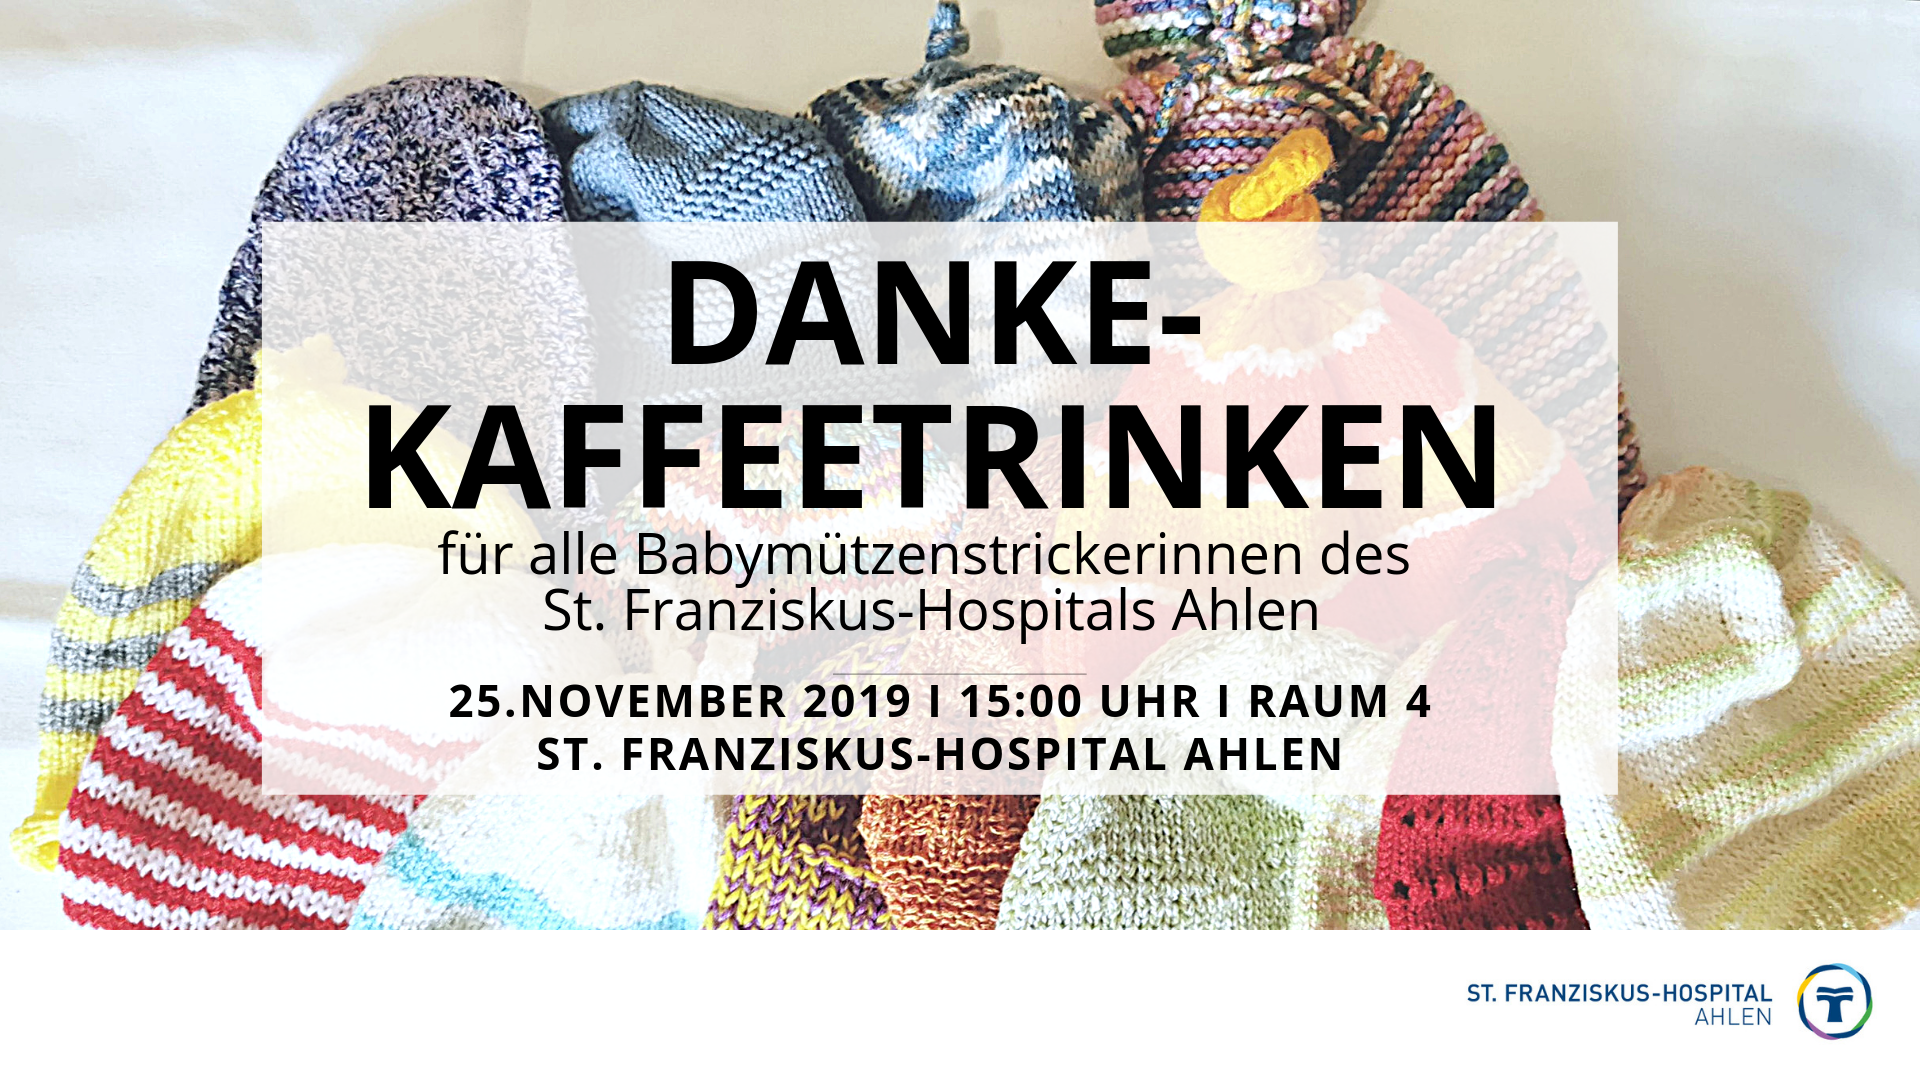 Einladung Zum Danke Kaffeetrinken An Alle Babymutzenstrickerinnen Vom St Franziskus Hospital Ahlen Am 25 November Um 15 00 Uhr In Raum 4